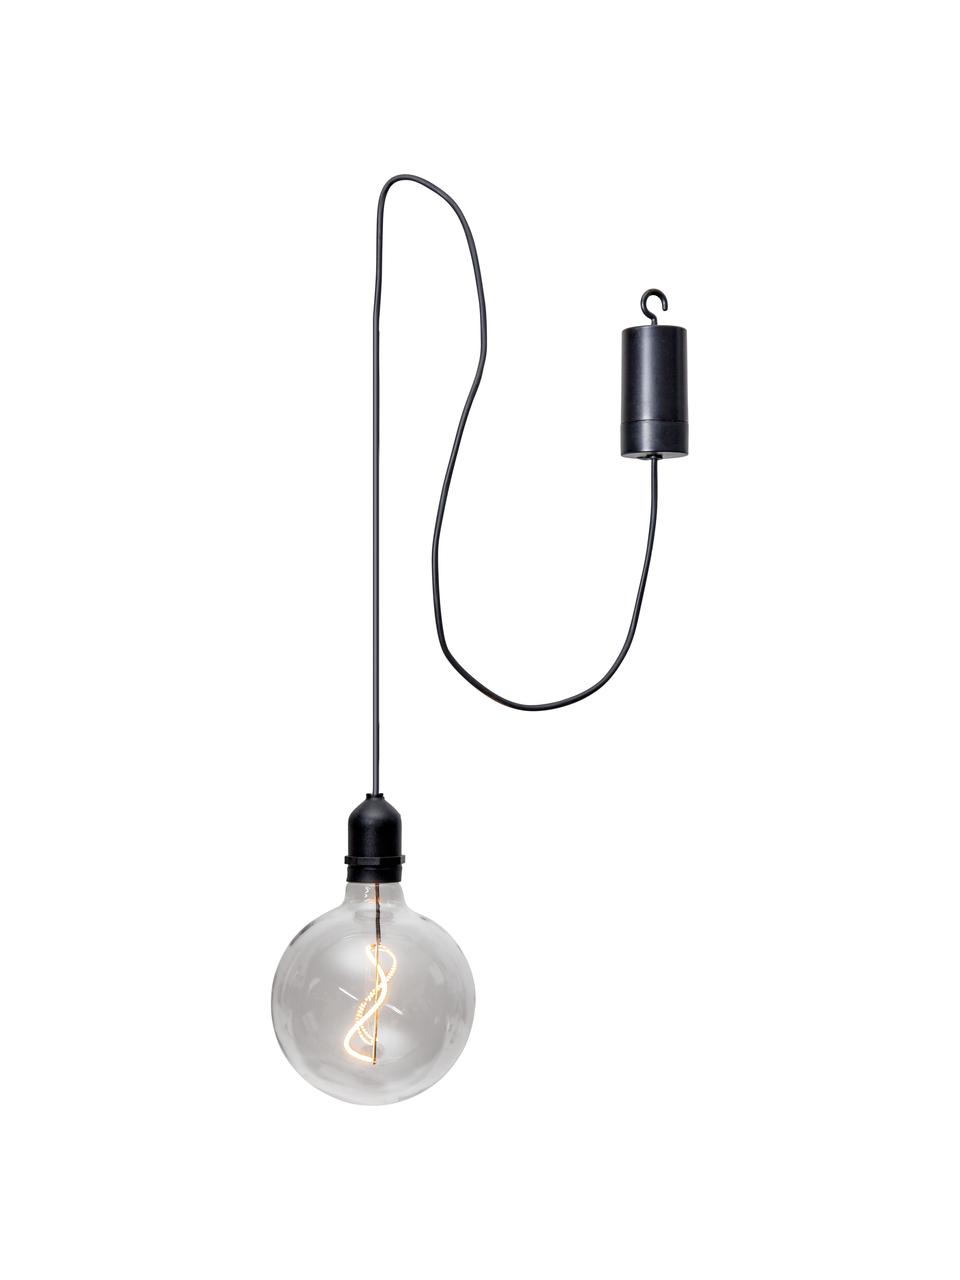 Mobiel hanglamp Bowl met tijdschakelaar, Lampenkap: glas, Fitting: kunststof, Transparant, zwart, B 13 cm x H 18 cm